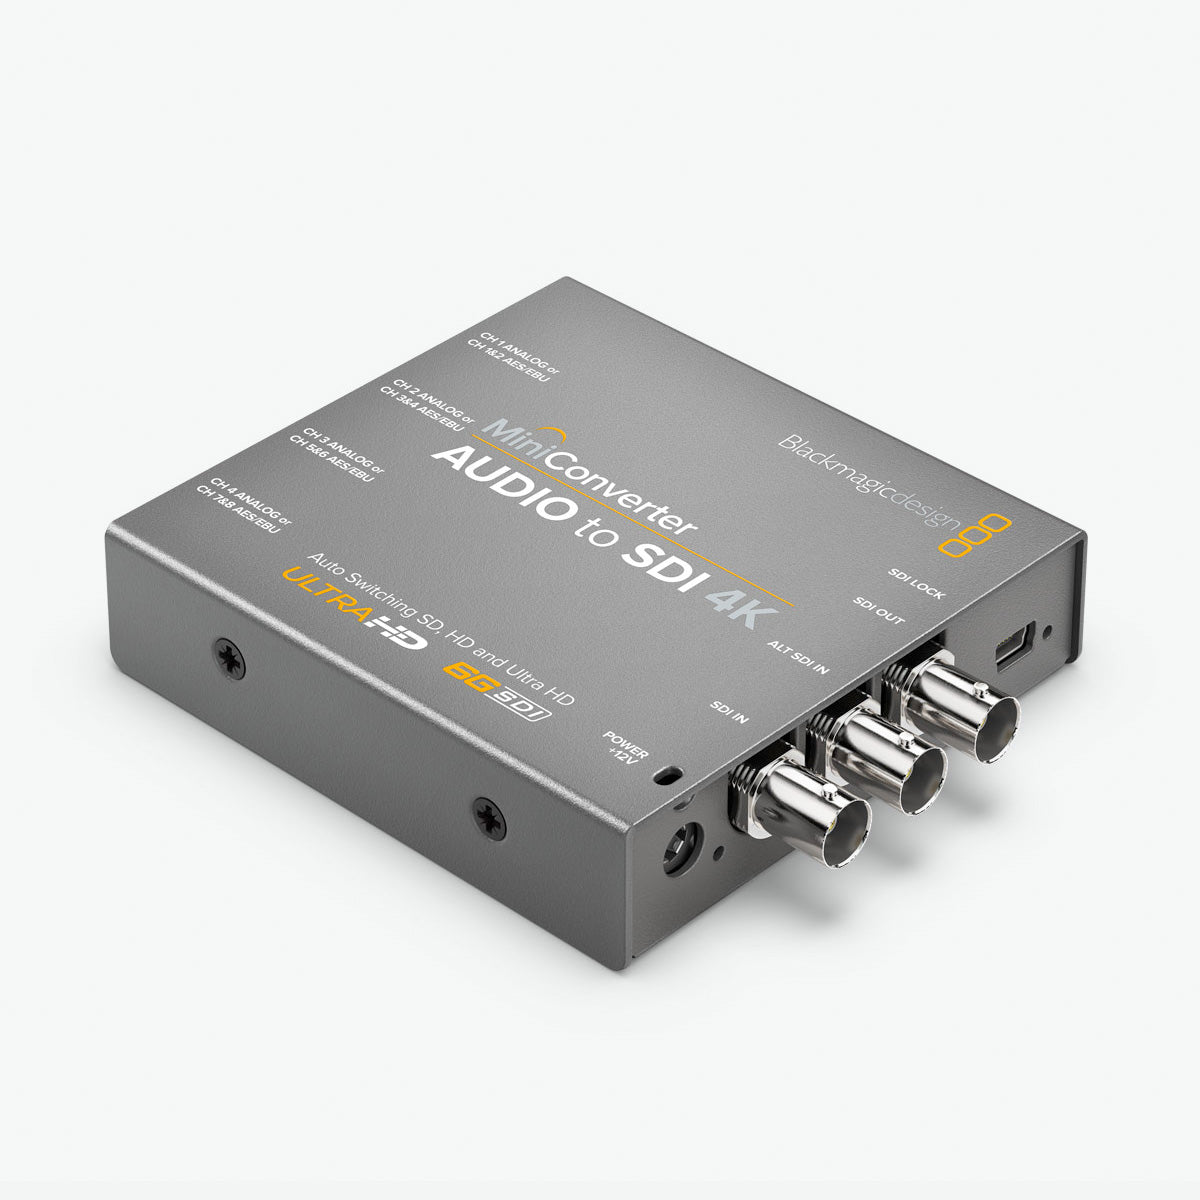 Blackmagic Design(ブラックマジックデザイン) Mini Converter - Audio to SDI 4K CONVMCAUDS4K